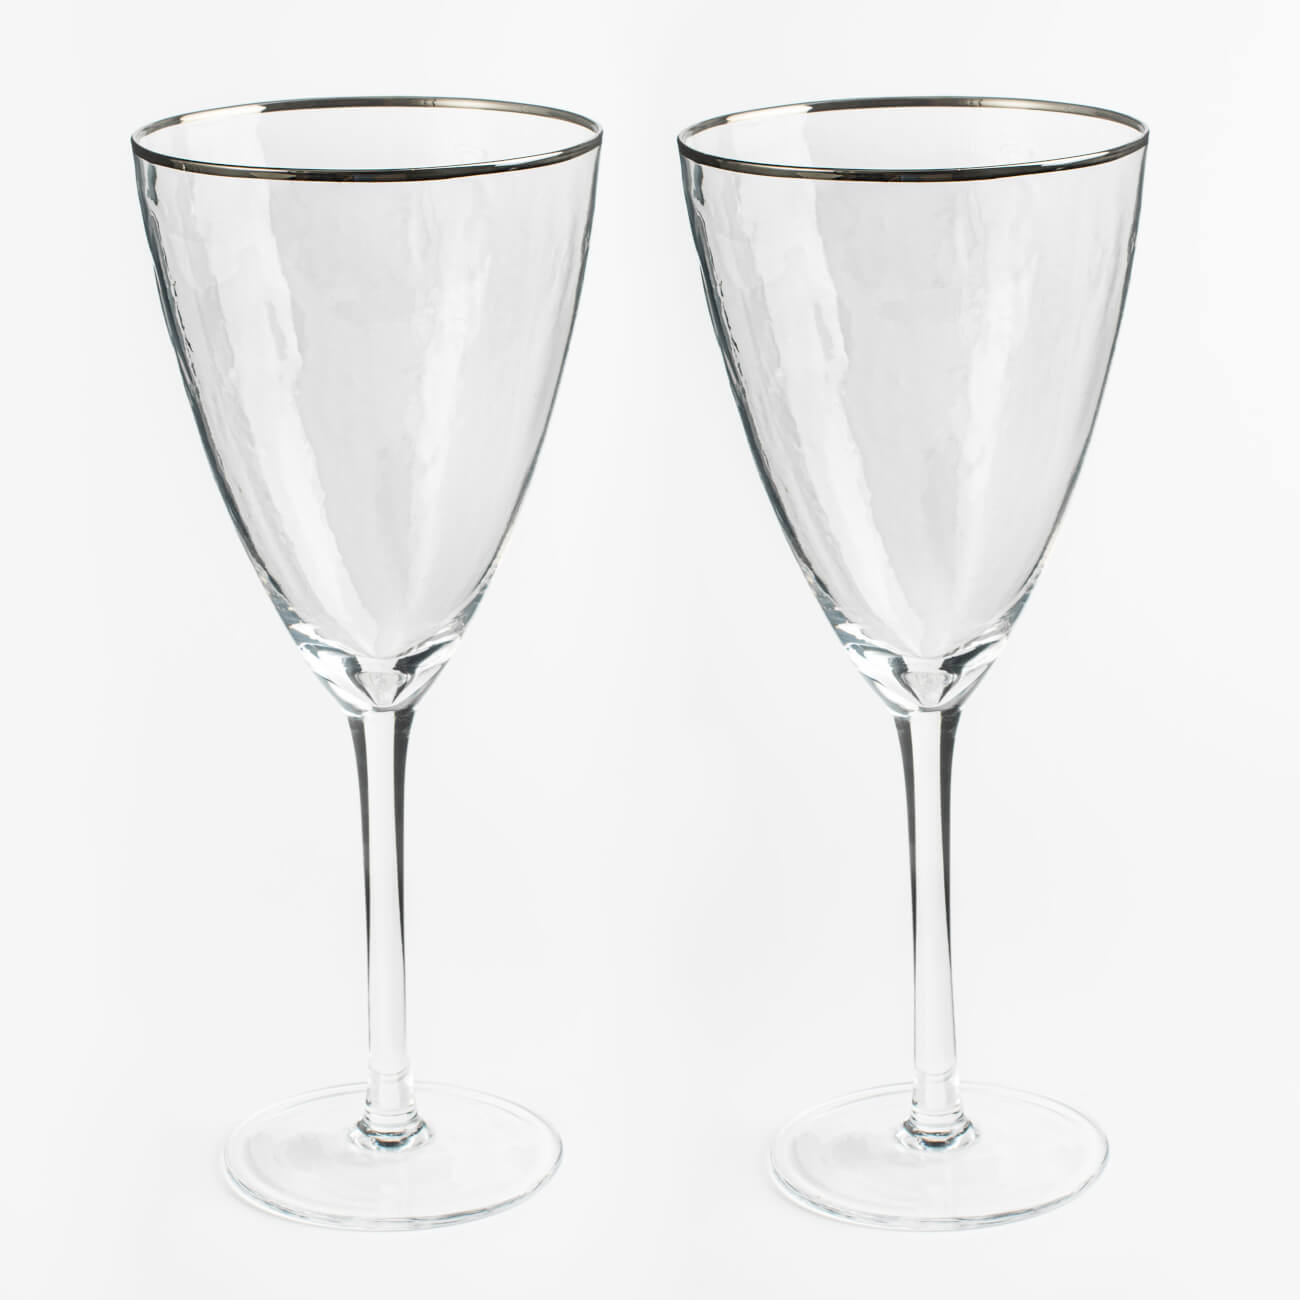 Бокал для вина, 400 мл, 2 шт, стекло, с серебристым кантом, Ripply silver стакан 450 мл 2 шт стекло перламутр ripply polar